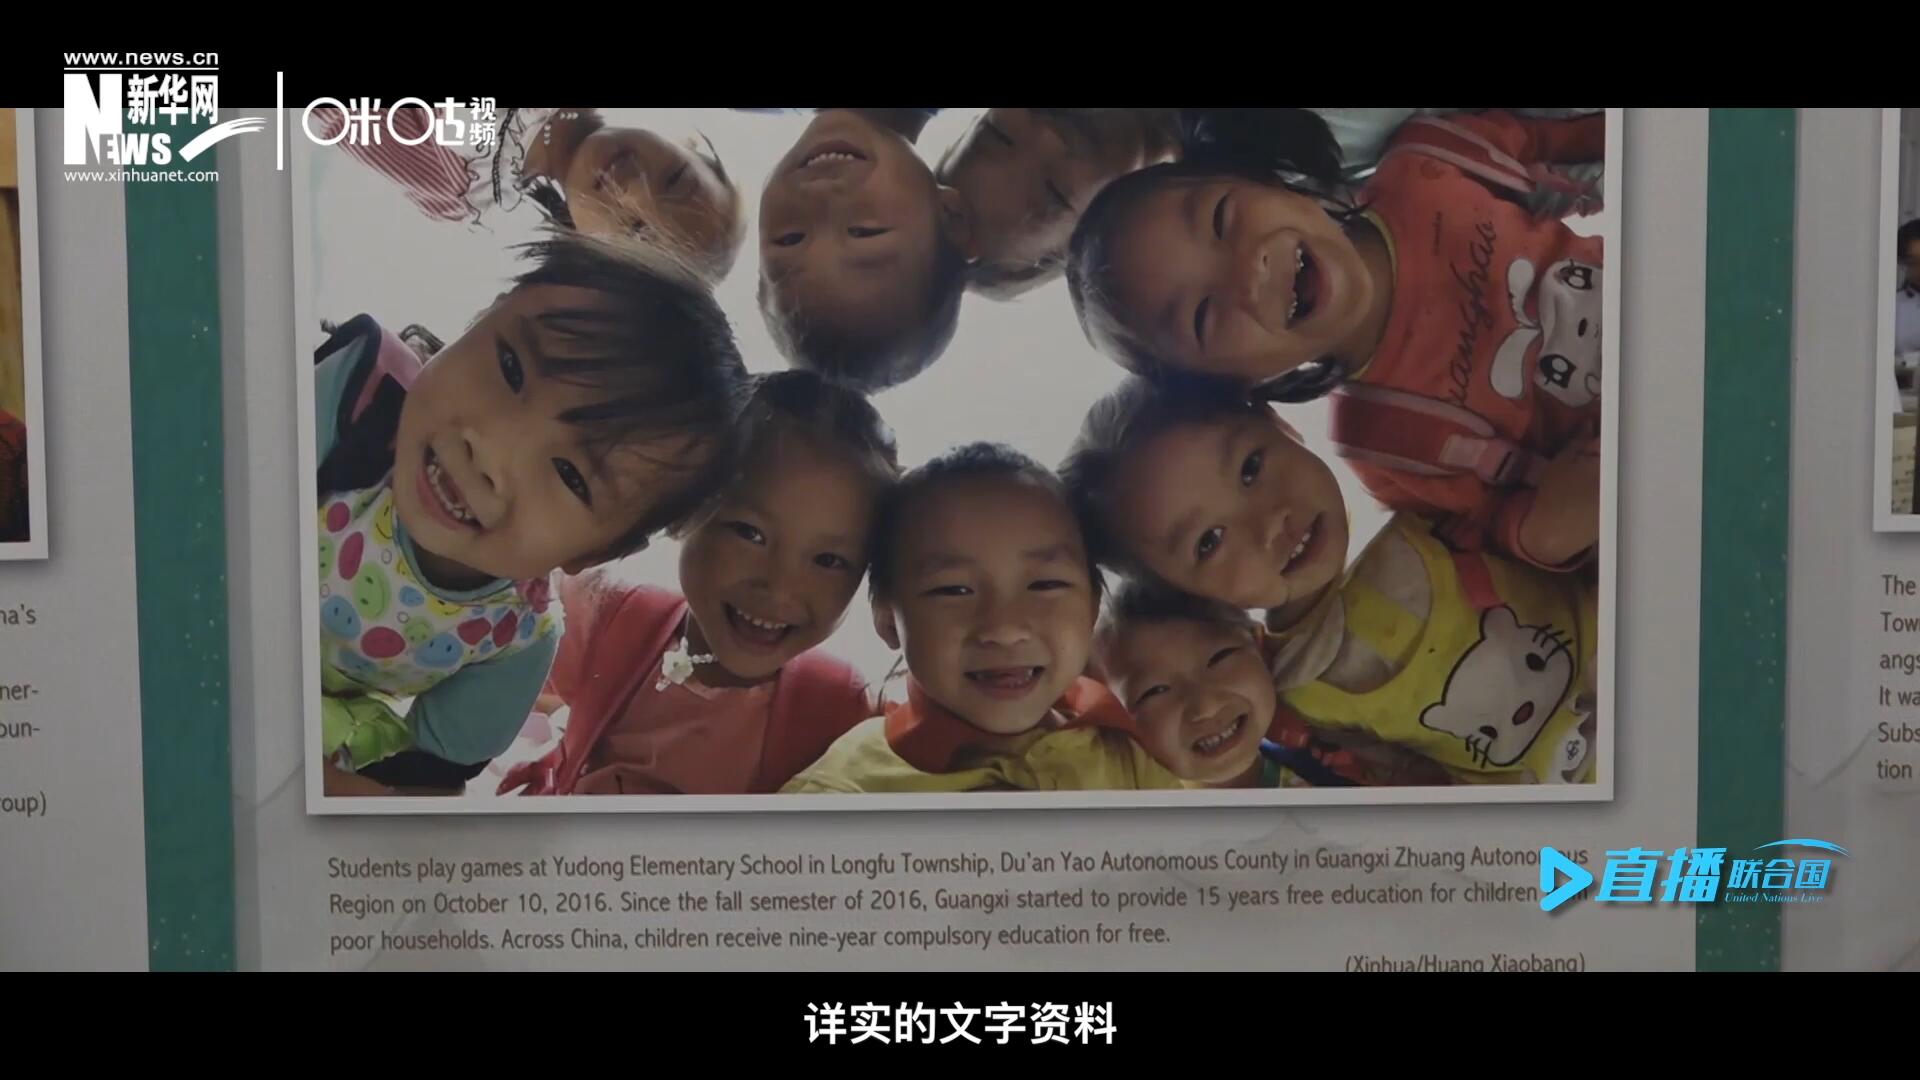 展覽通過鮮活生動的圖片、視頻短片、詳實的文字資料，講述了中國精準扶貧、脫貧攻堅的故事，向世界展示中國扶貧工作成就，介紹全球減貧的中國方案。